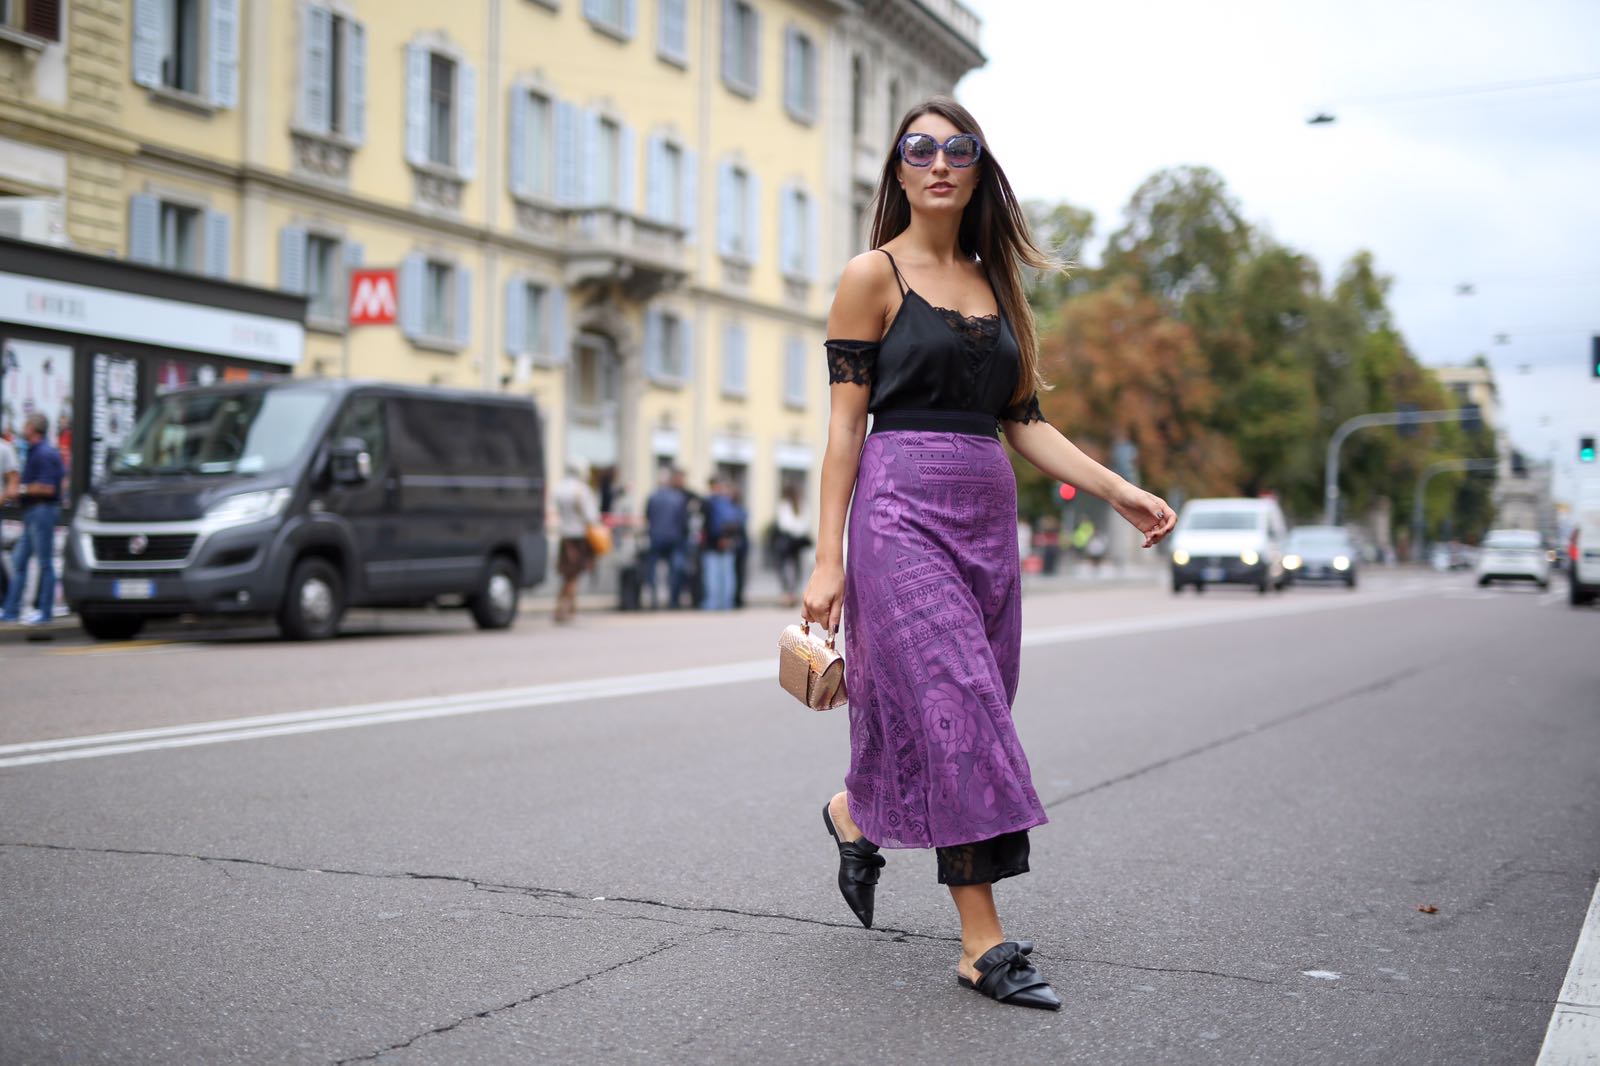 Dalle sfilate di Milano i look di street style da copiare, primo giorno